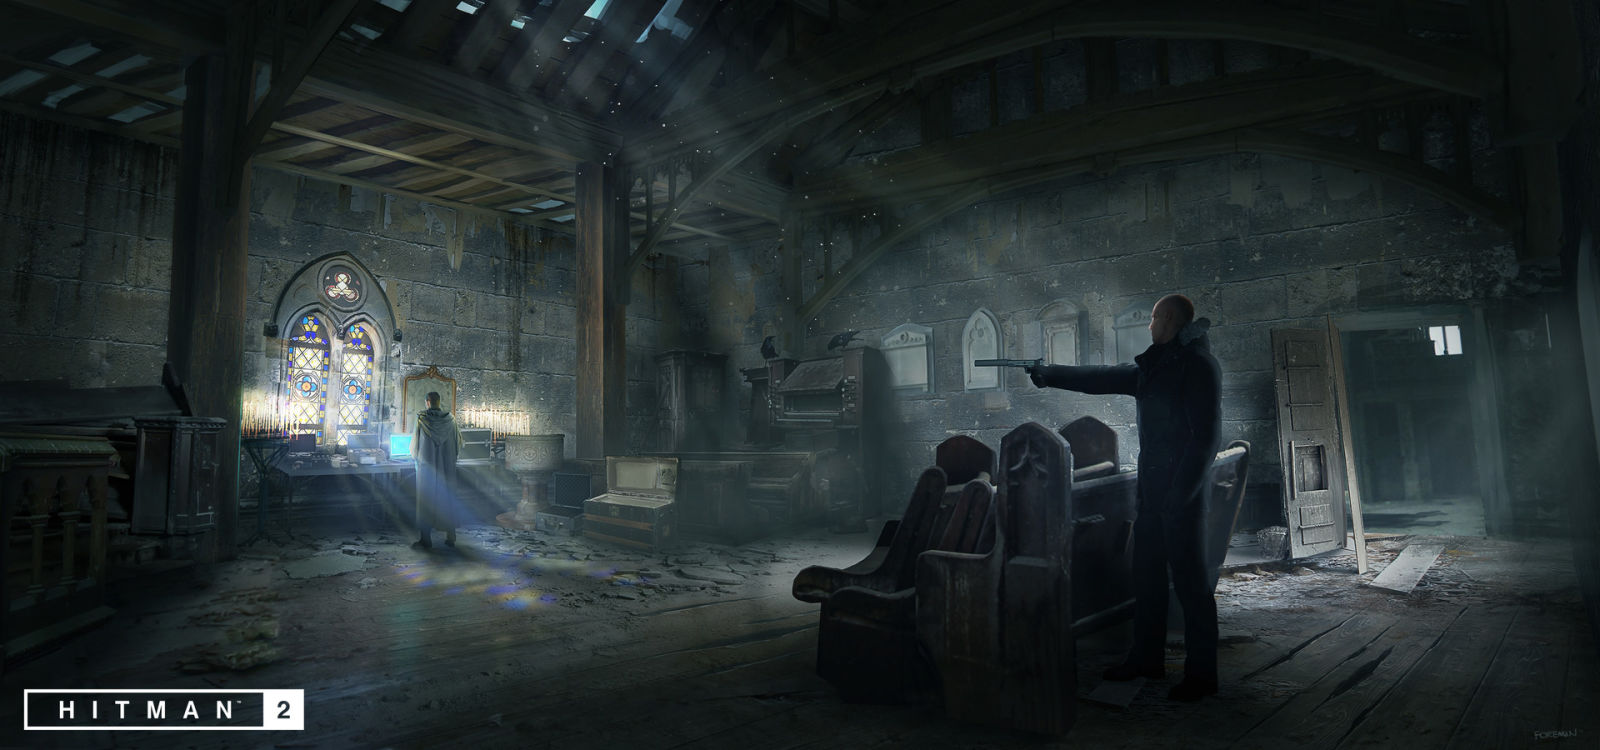 《杀手2》艺术设定图欣赏 地表最强光头刺客登场